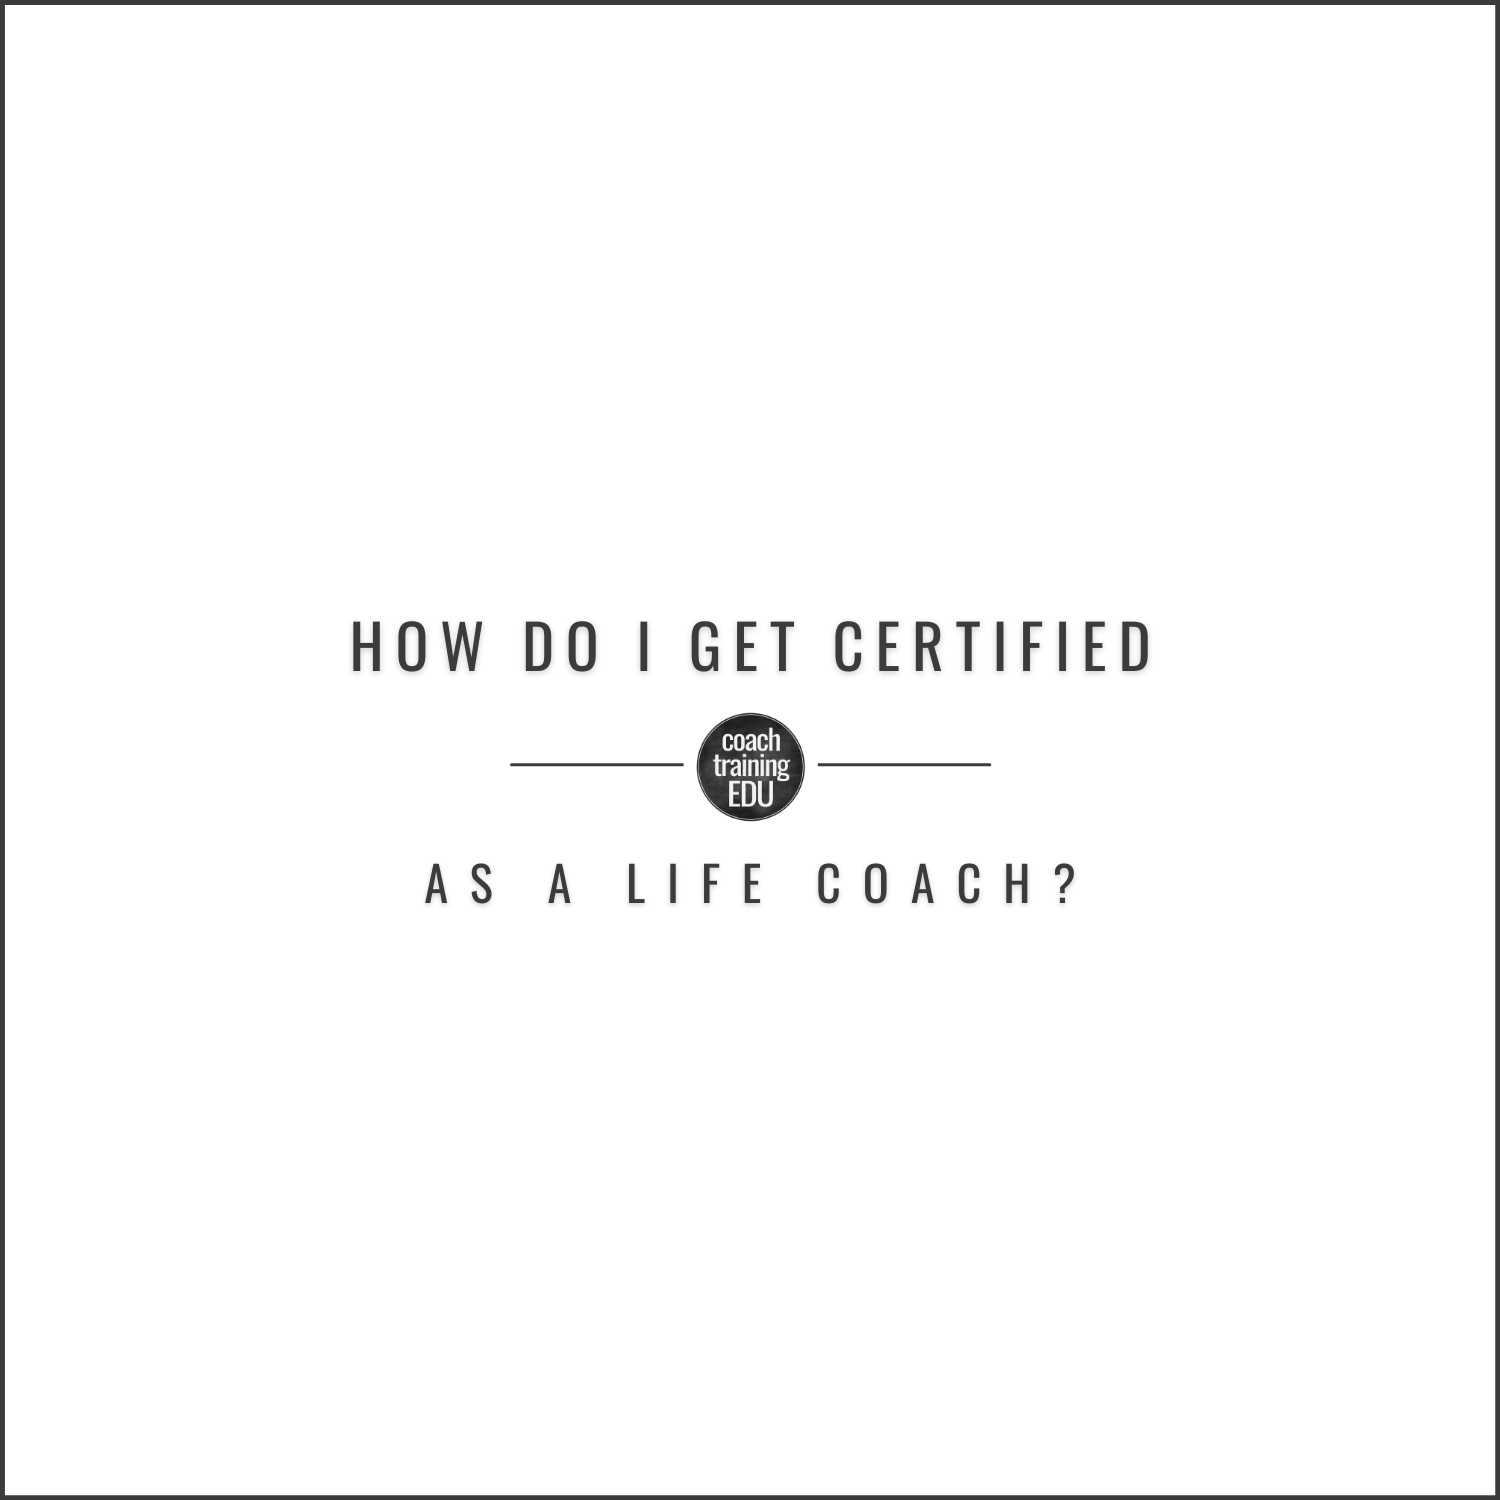 How Do I Get Certified as a Life Coach?